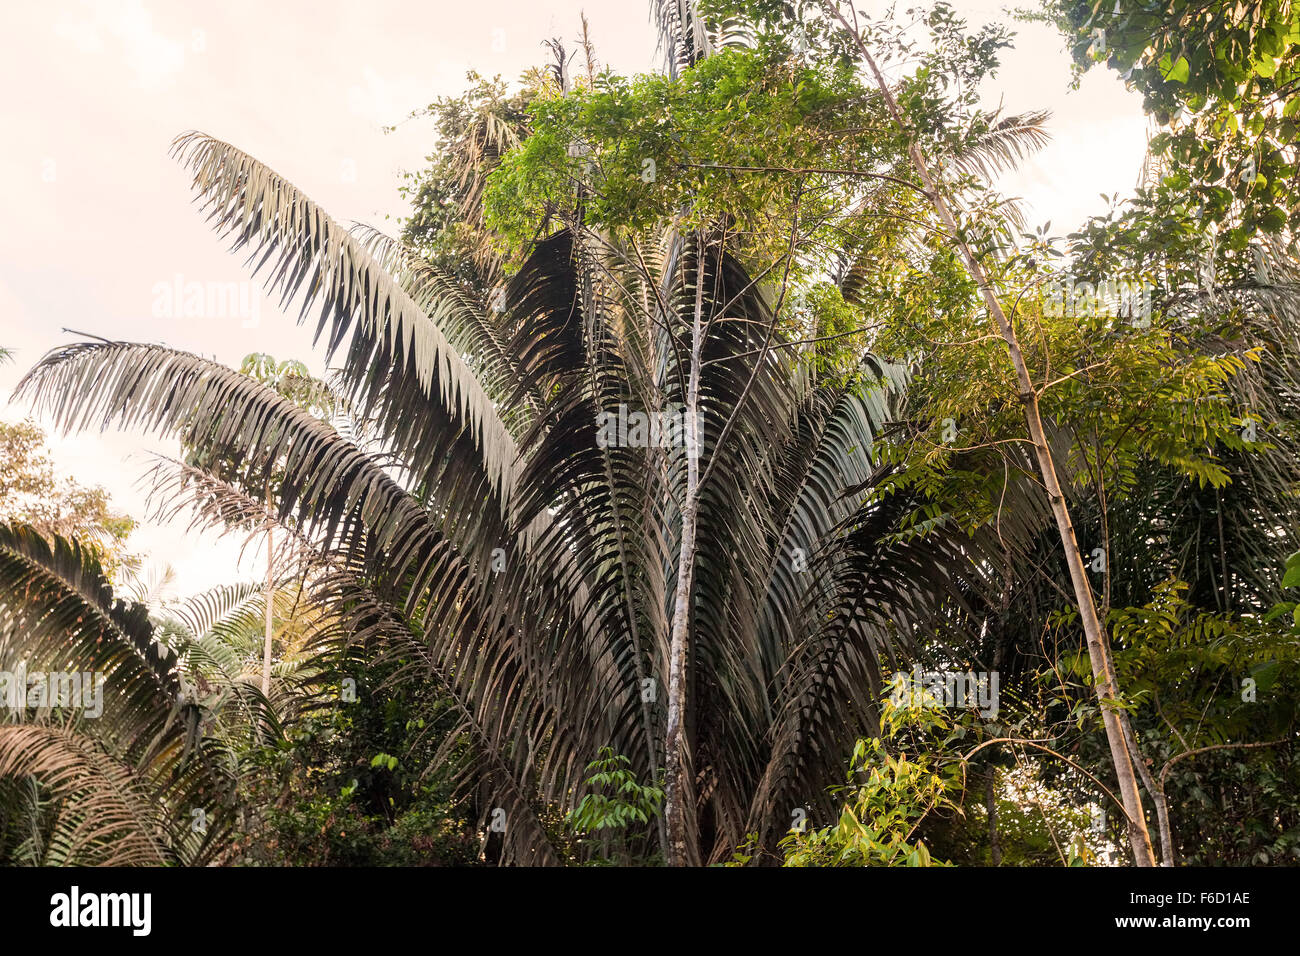 La foresta pluviale amazzonica, noto anche come Amazzonia è uno dei mondi più grandi risorse naturali Foto Stock